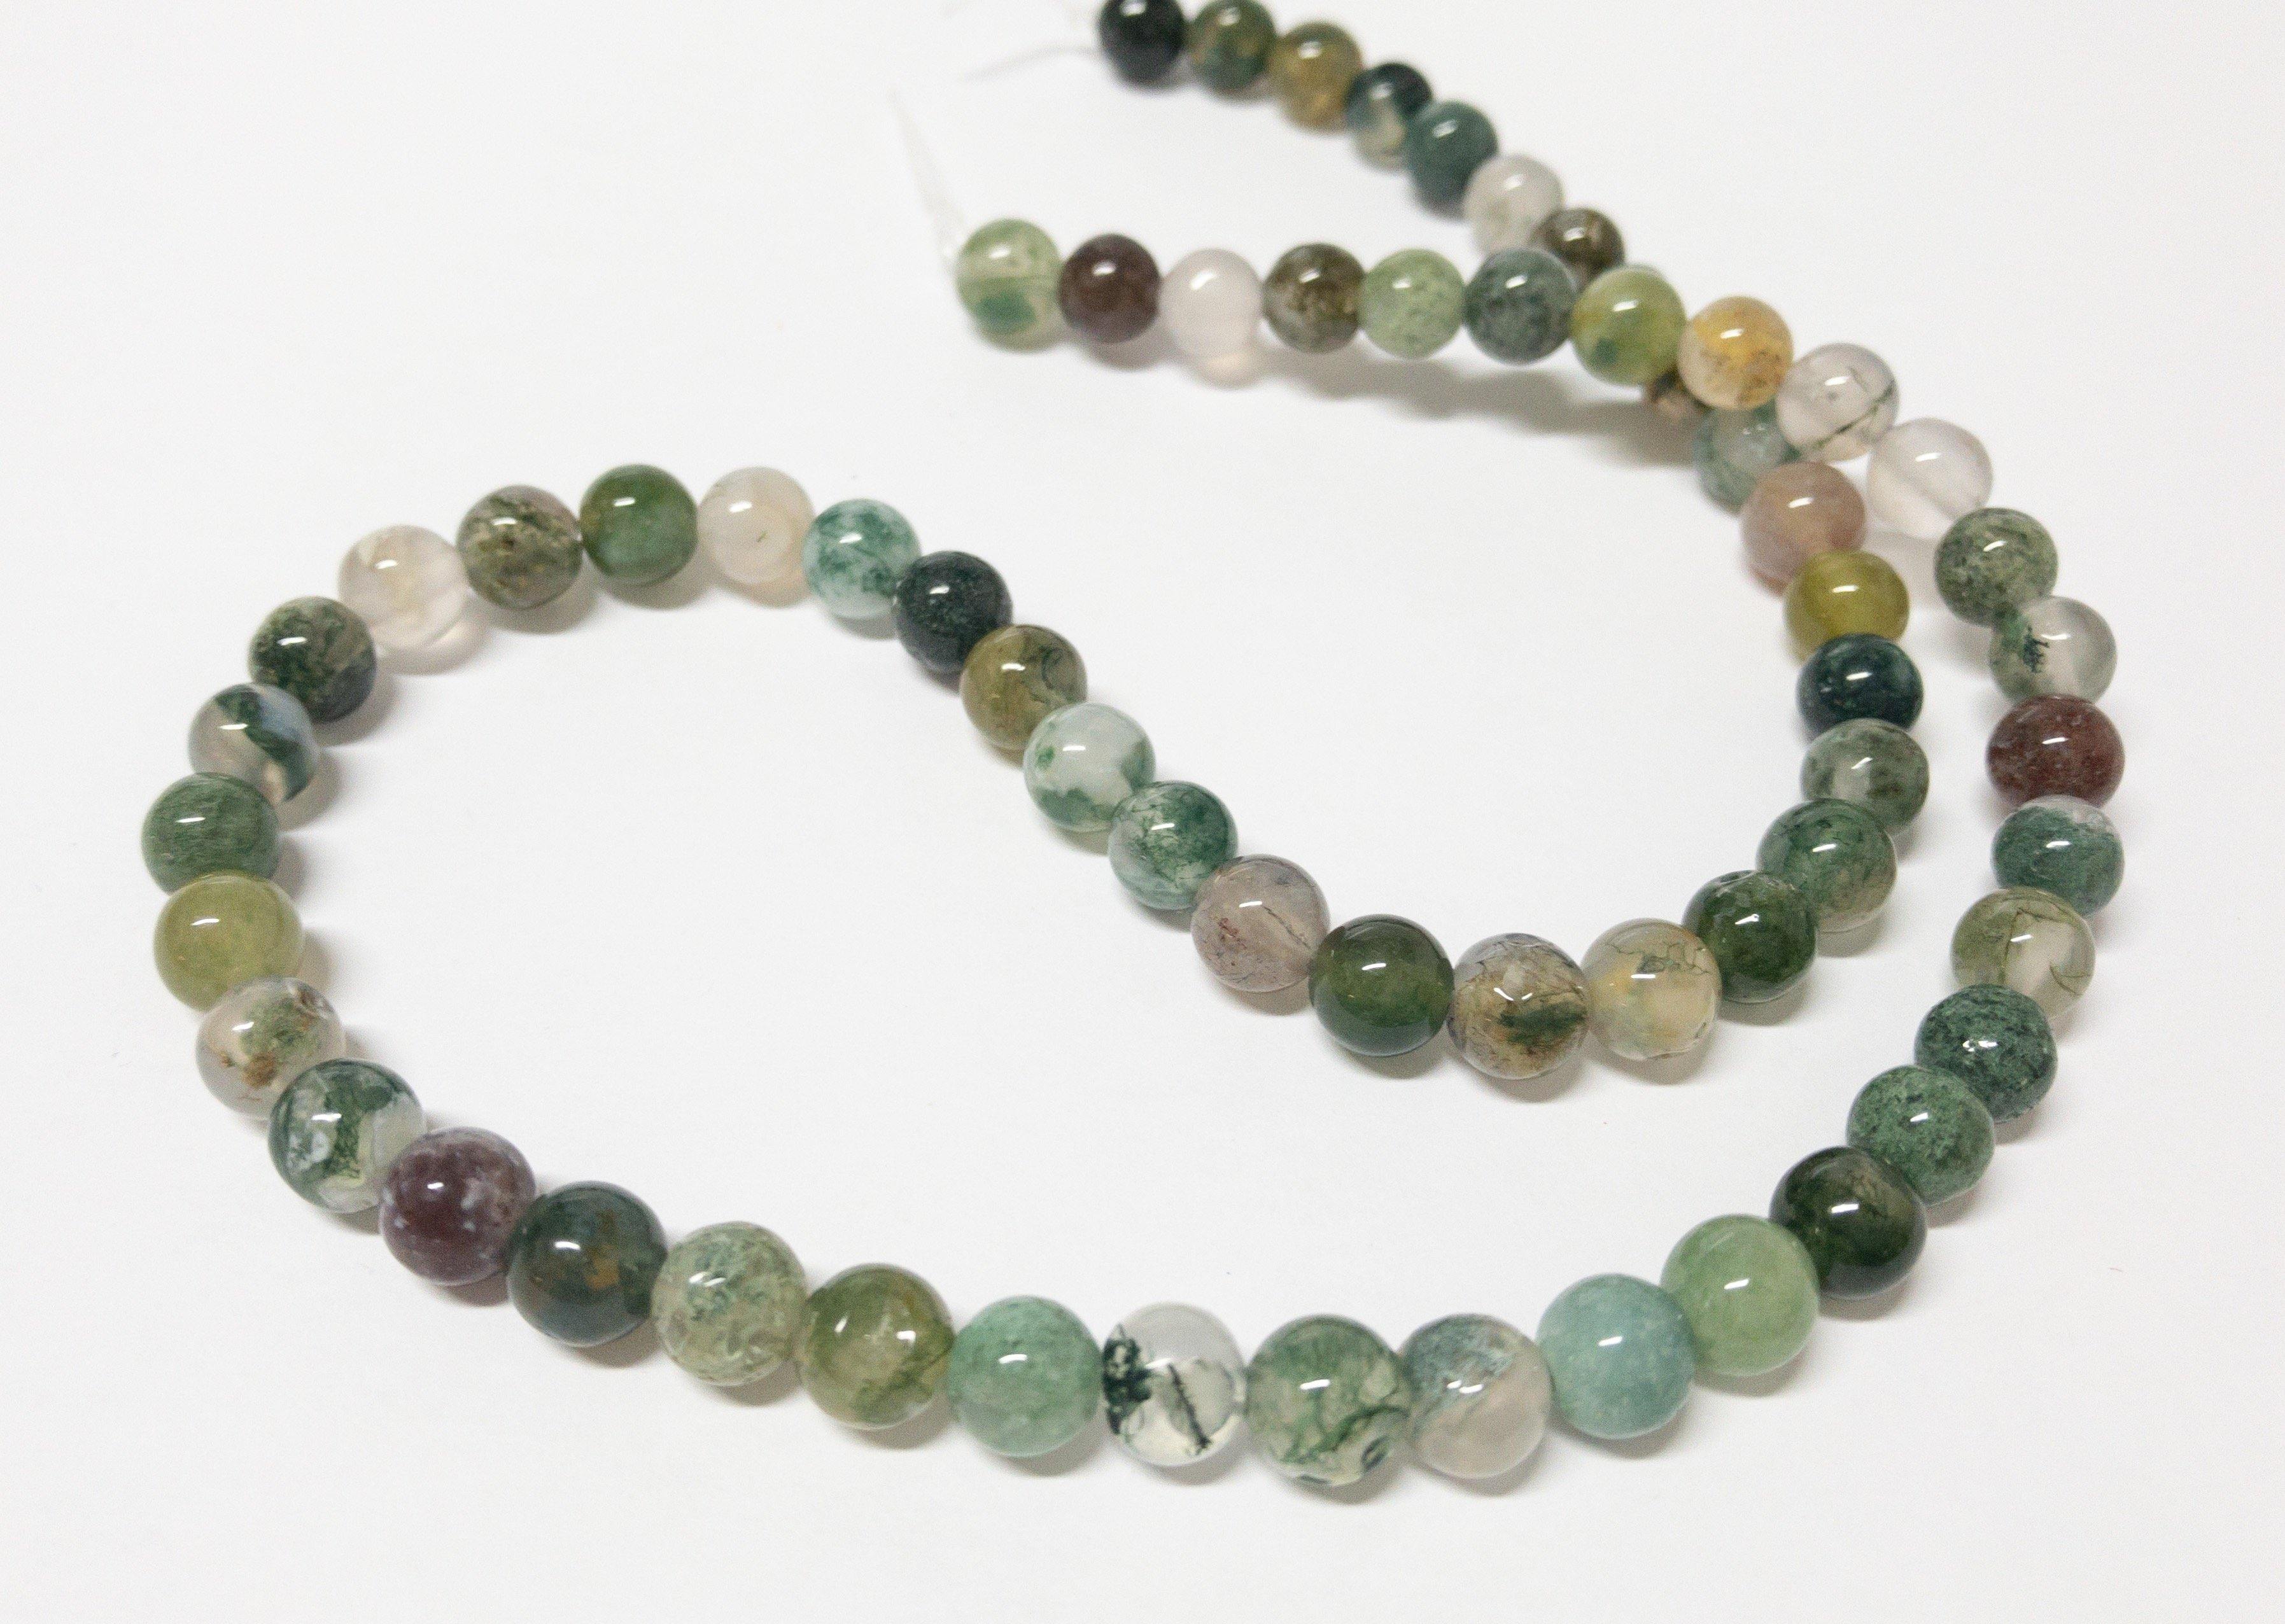 Naturstein Perlen Chalcedon (Quarz) und Jaspis 4 mm - Farbe green multicolor - bead&more